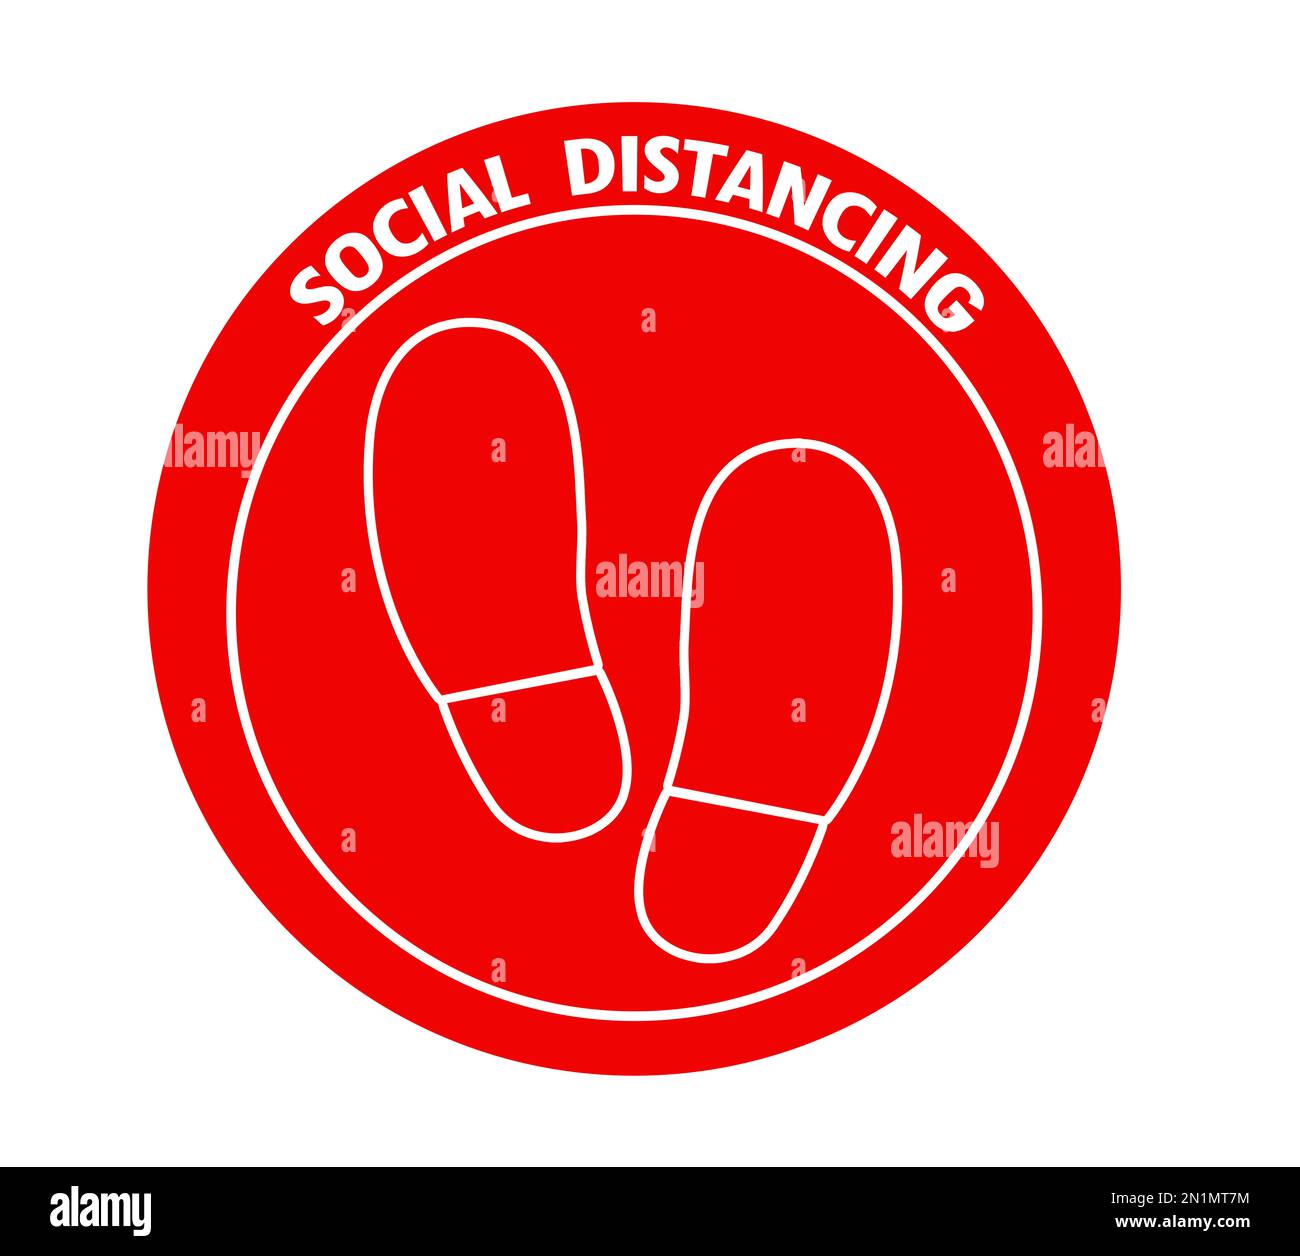 Signe rond rouge avec texte social distance et chaussures imprimés, illustration. Mesure de protection en cas de pandémie de coronavirus Banque D'Images